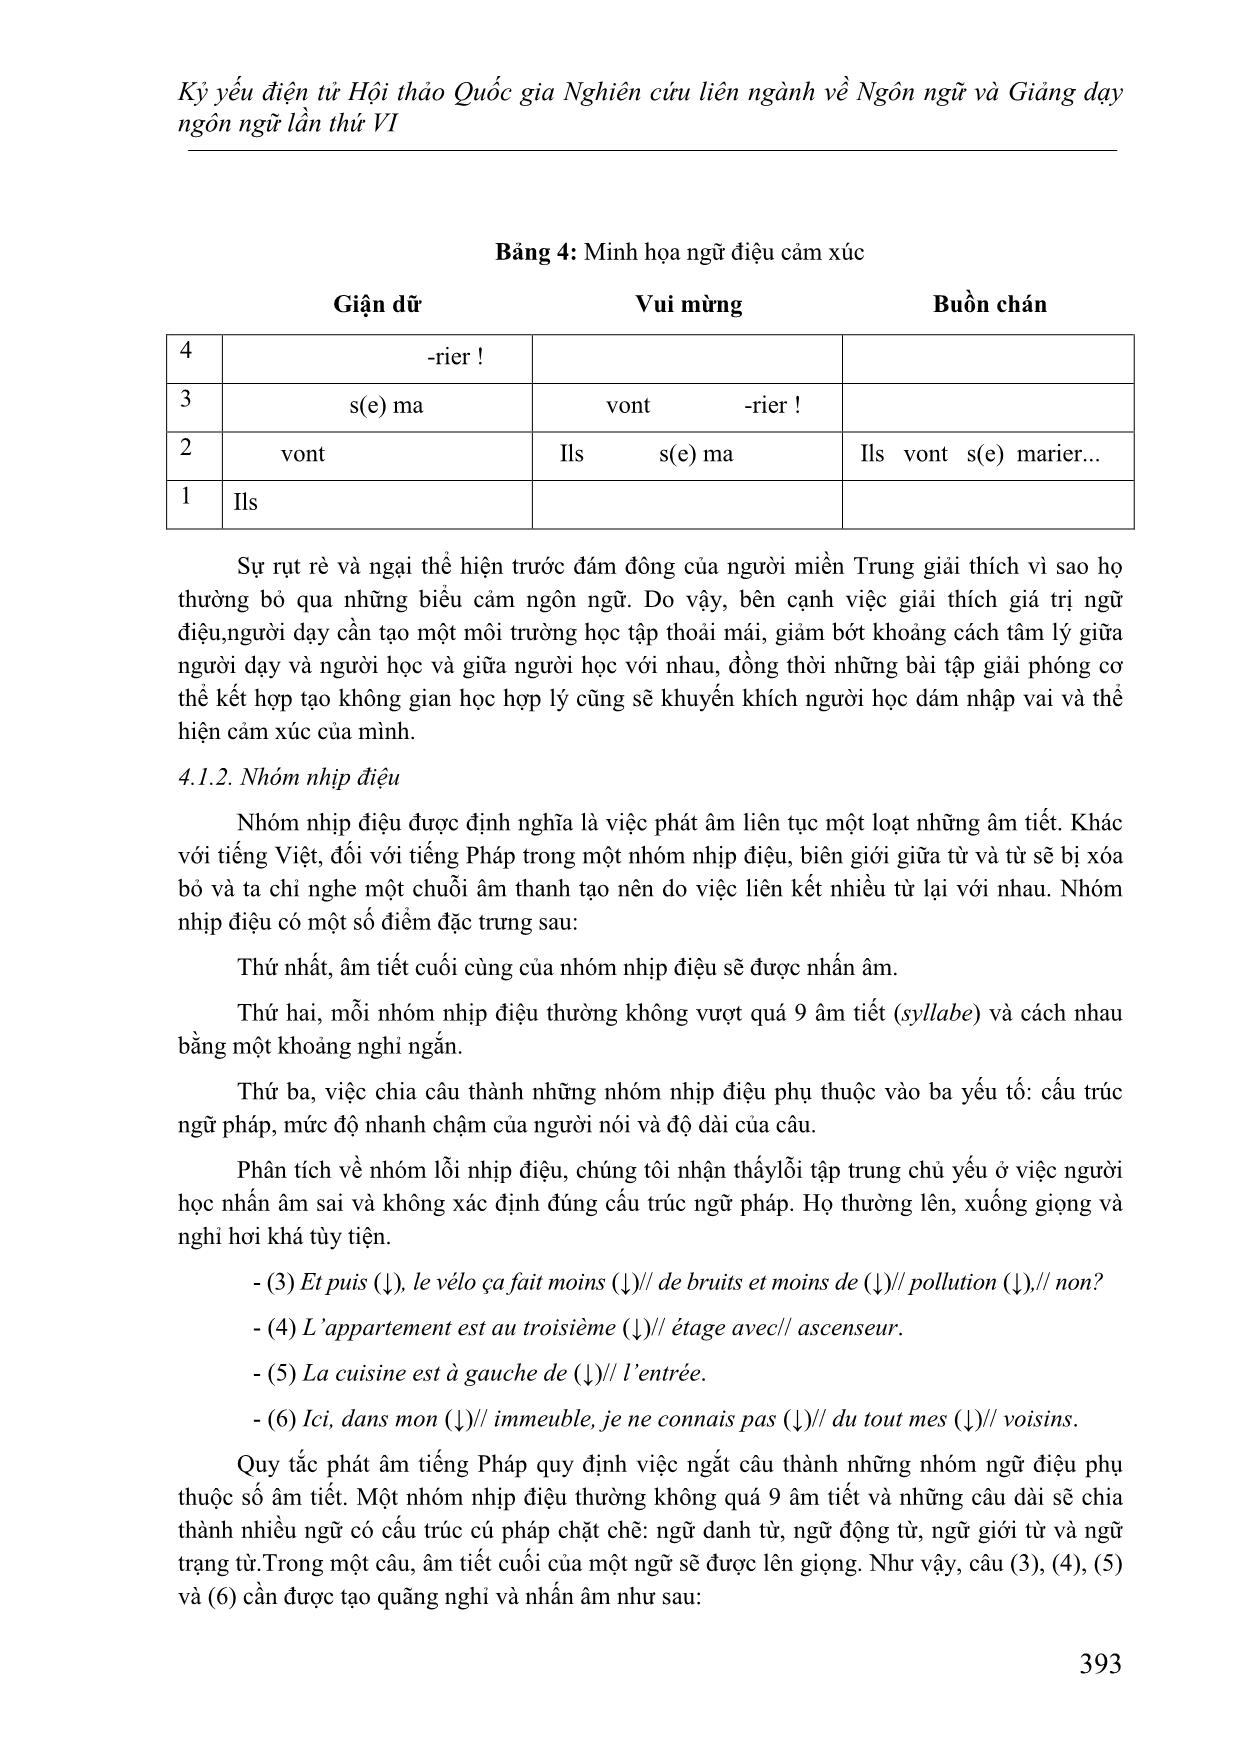 Nghiên cứu lỗi phát âm của người Việt học tiếng Pháp nhìn từ góc độ ngữ âm - âm vị học trang 6